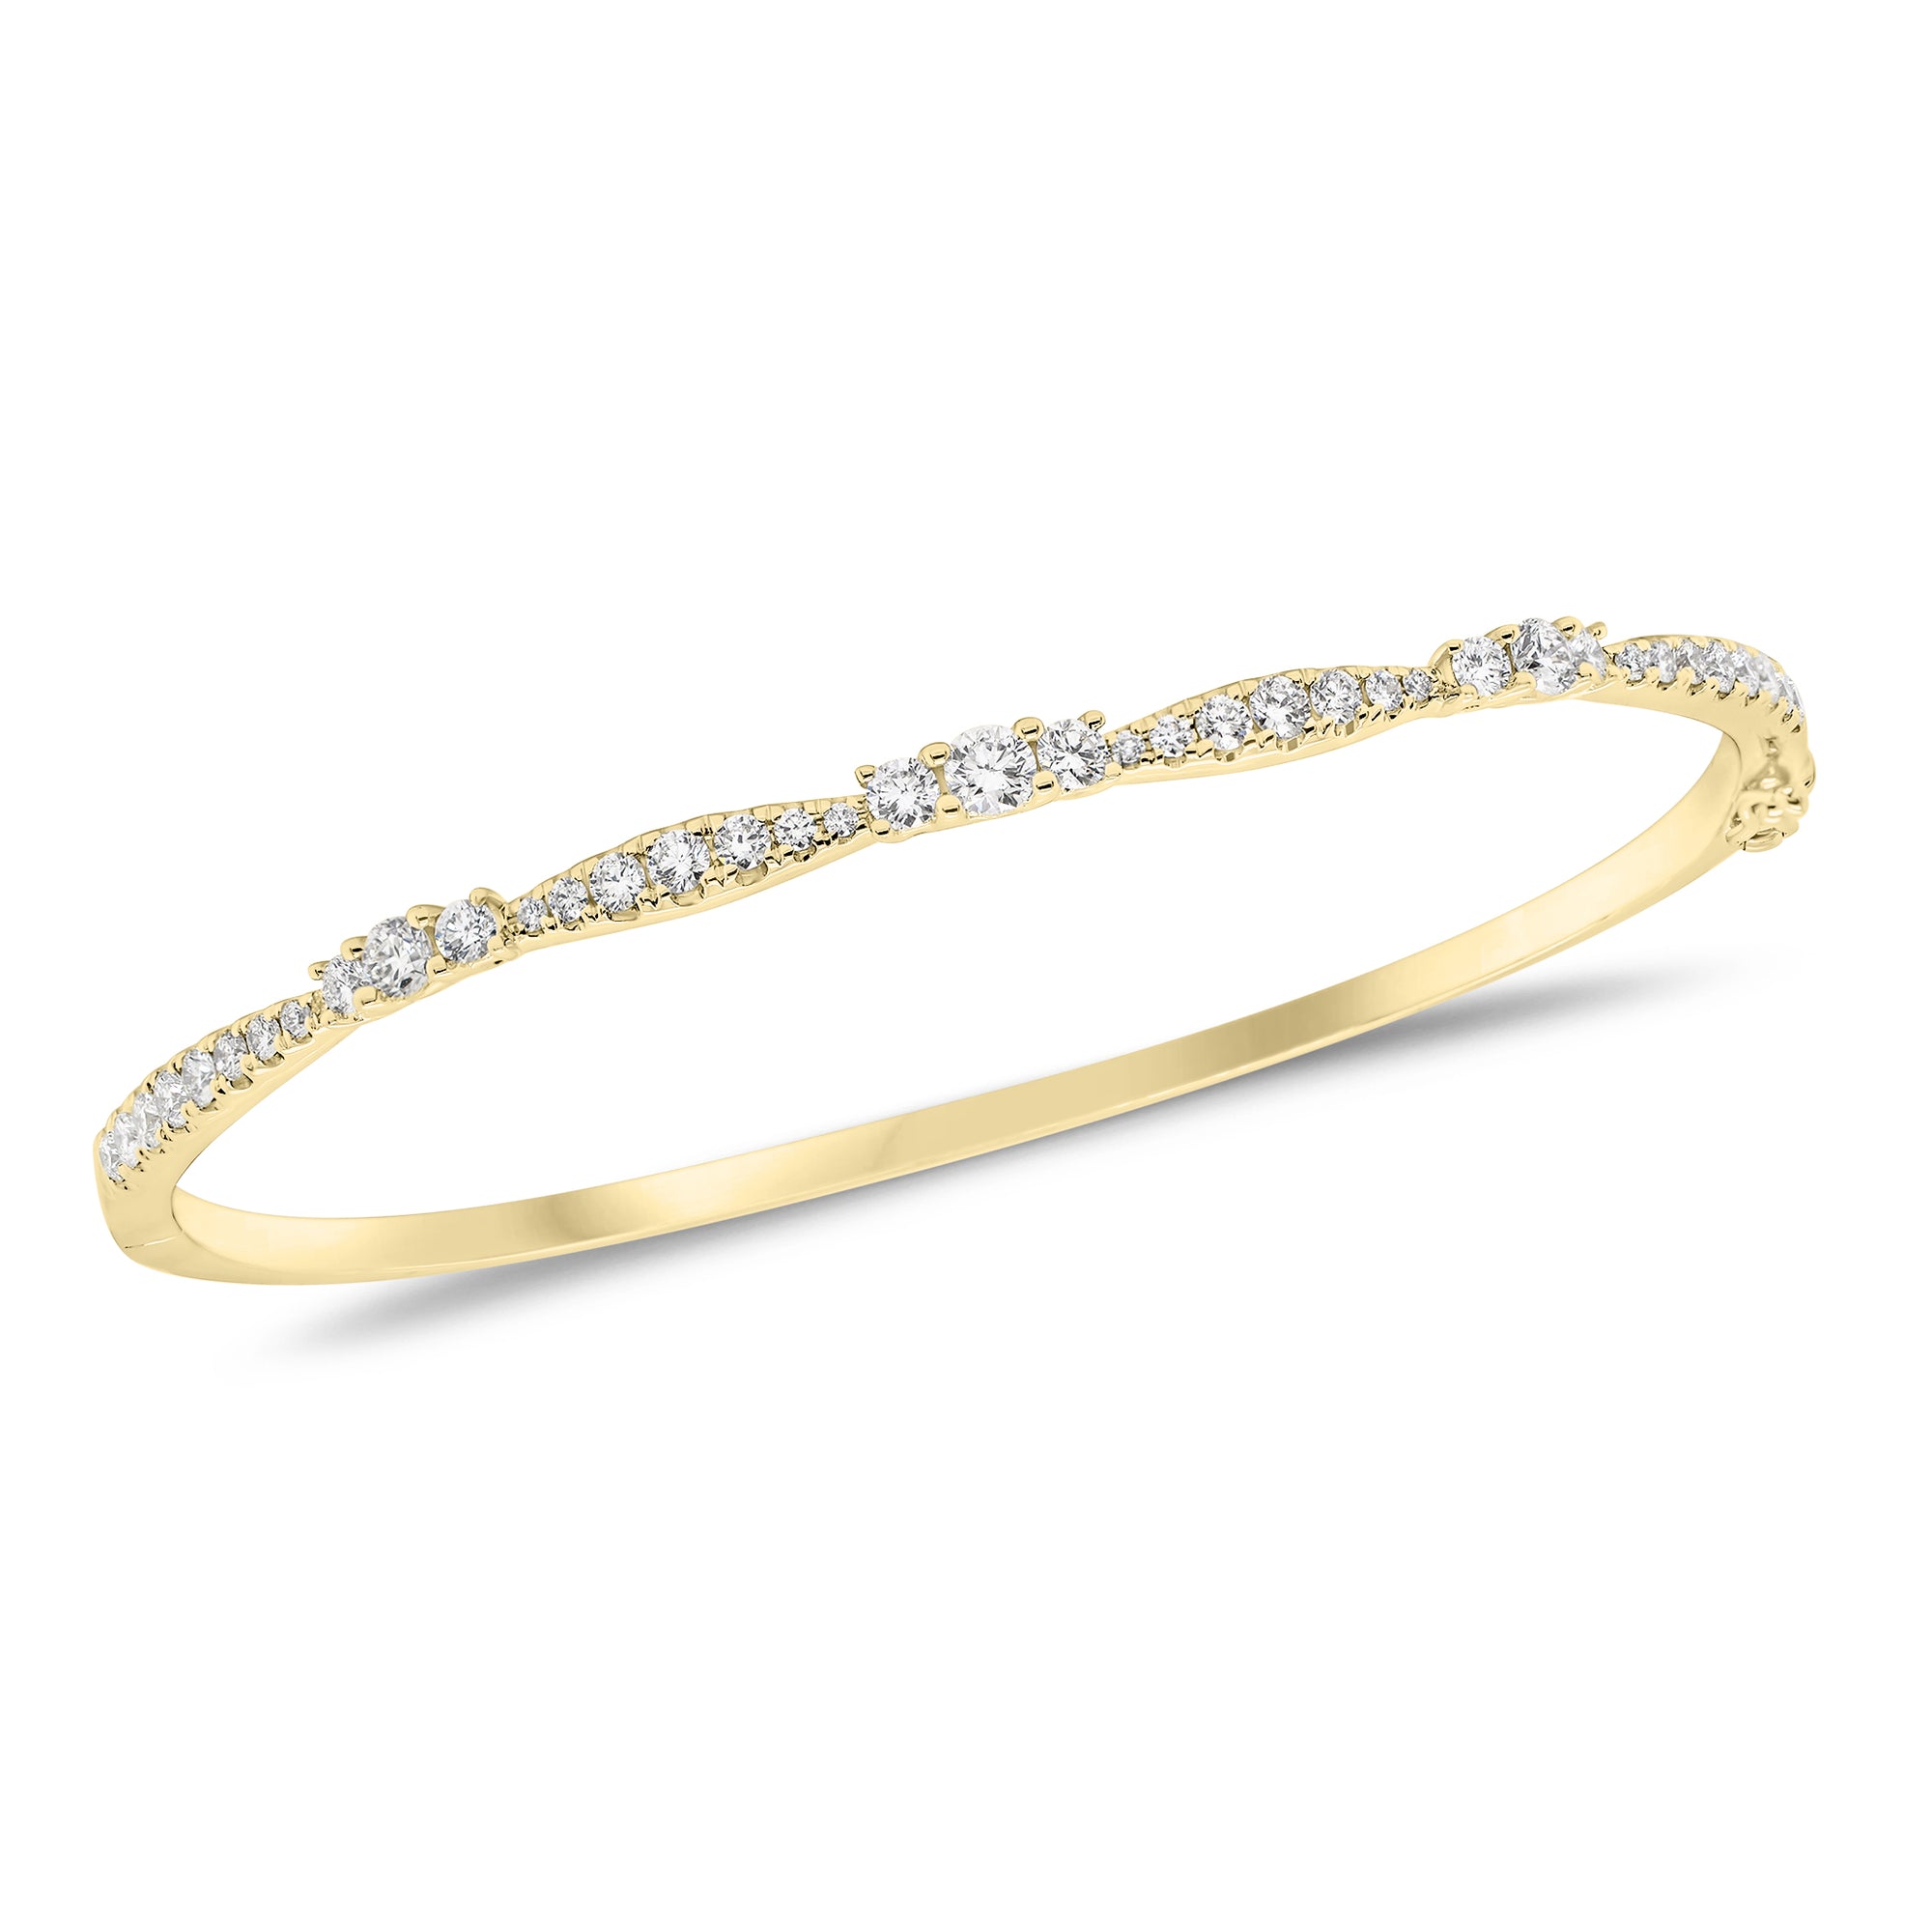 Diamond Elegance Bangle - 18K yellow gold weighing 10.79 grams   - 41 round diamonds weighing 0.95 carats